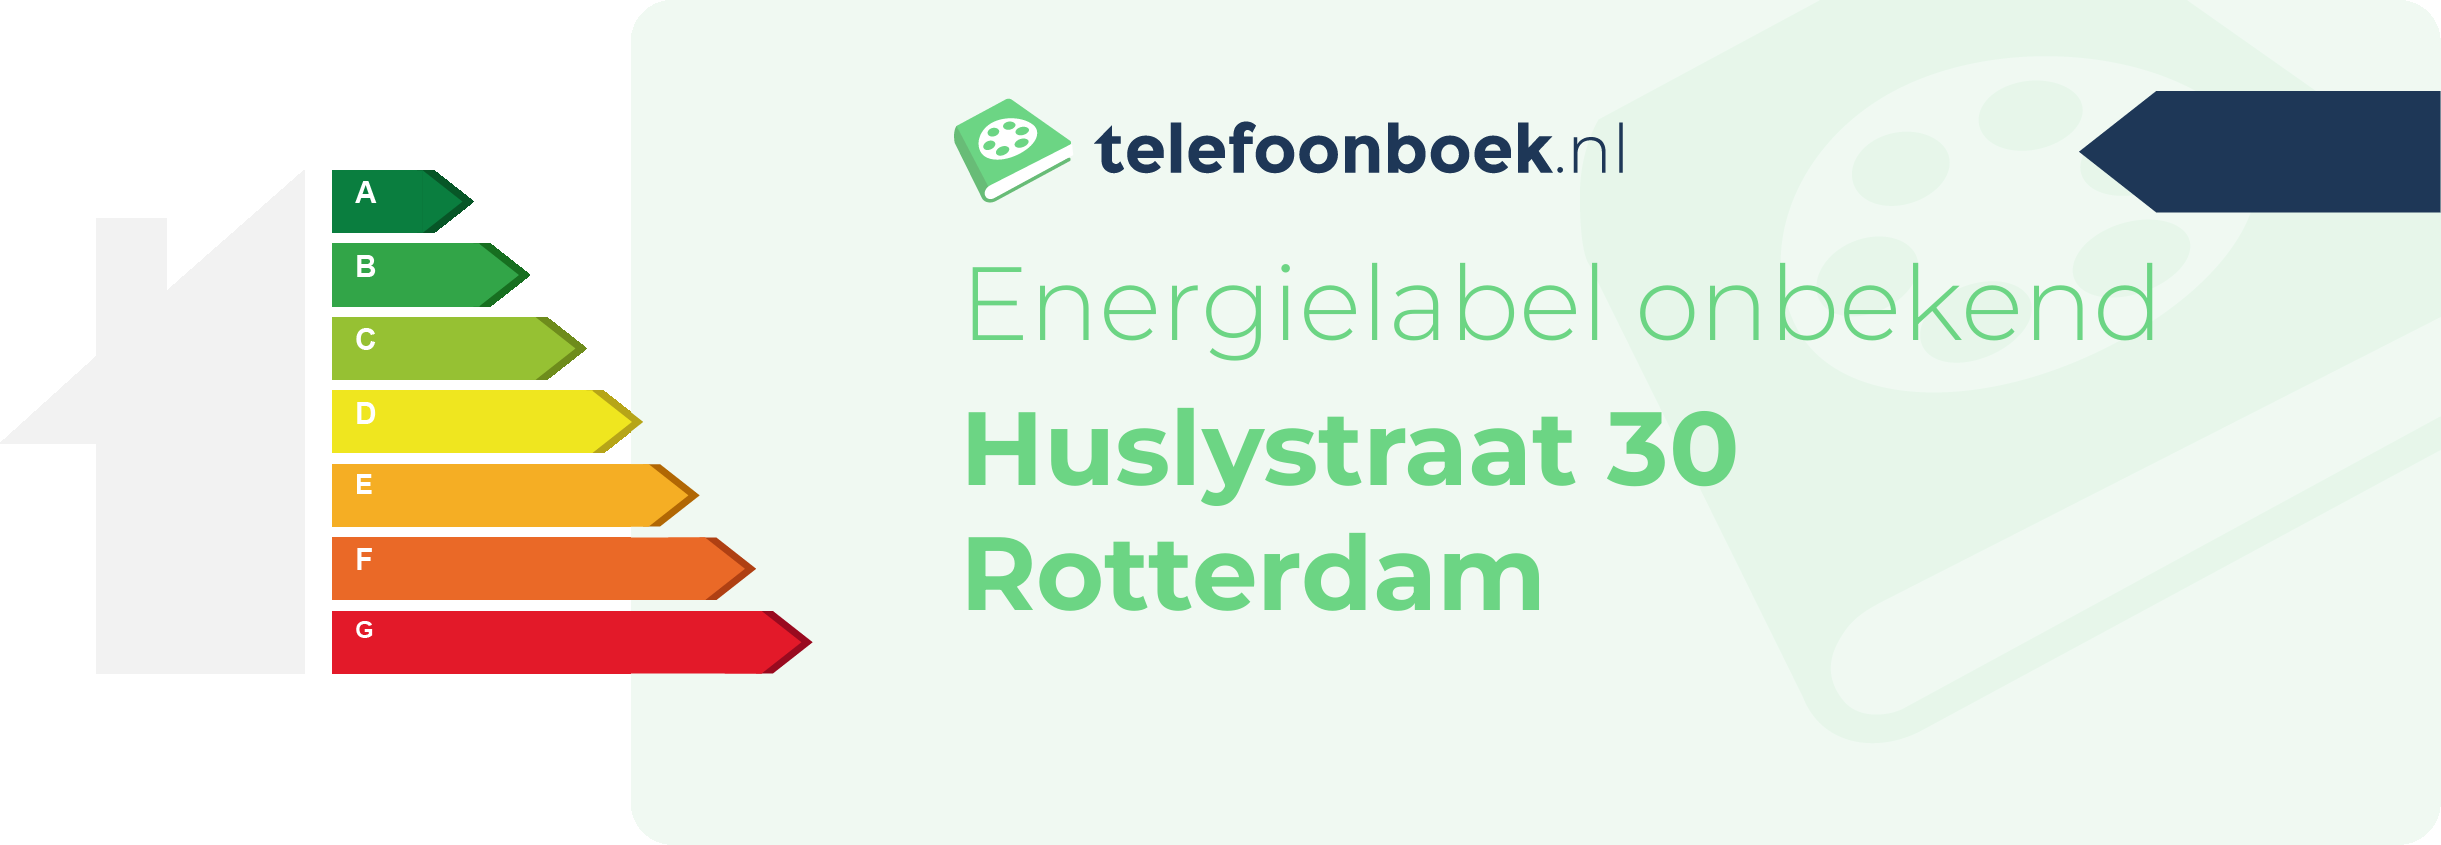 Energielabel Huslystraat 30 Rotterdam